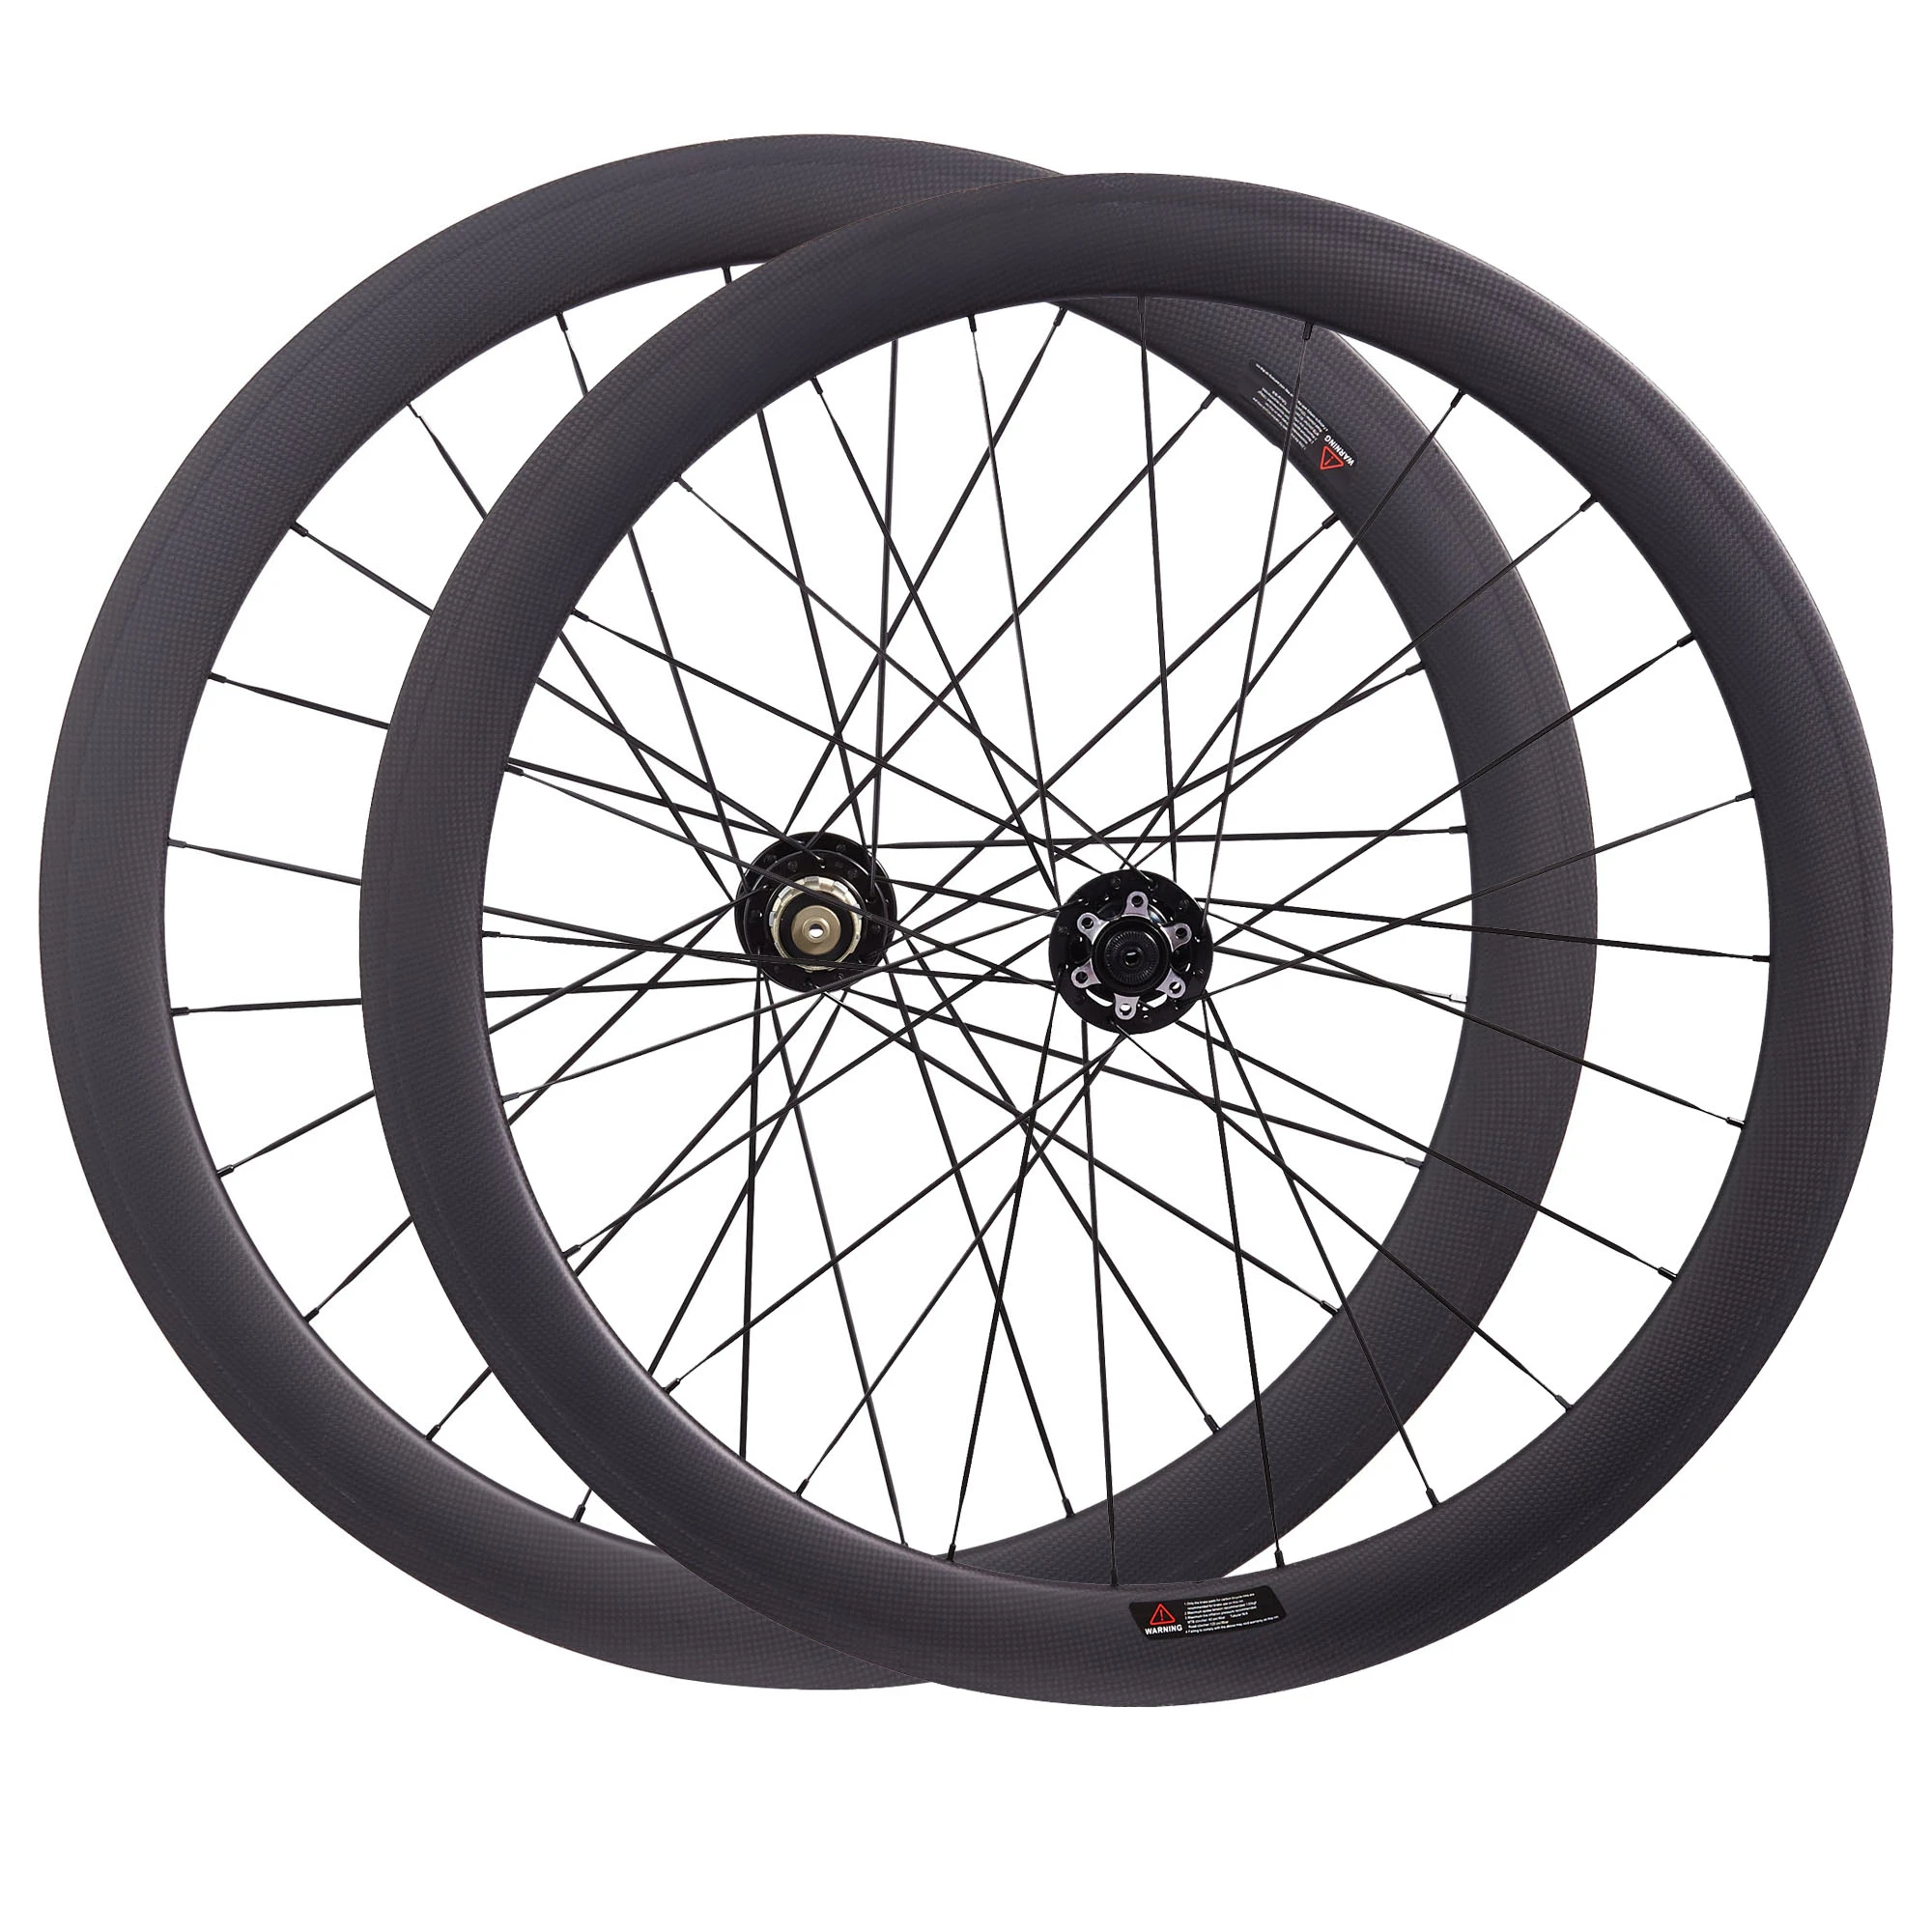 700C Carbon Fiber Gravel Bike Wheelset 38mm Tubeless Road Disc Brake Wheels